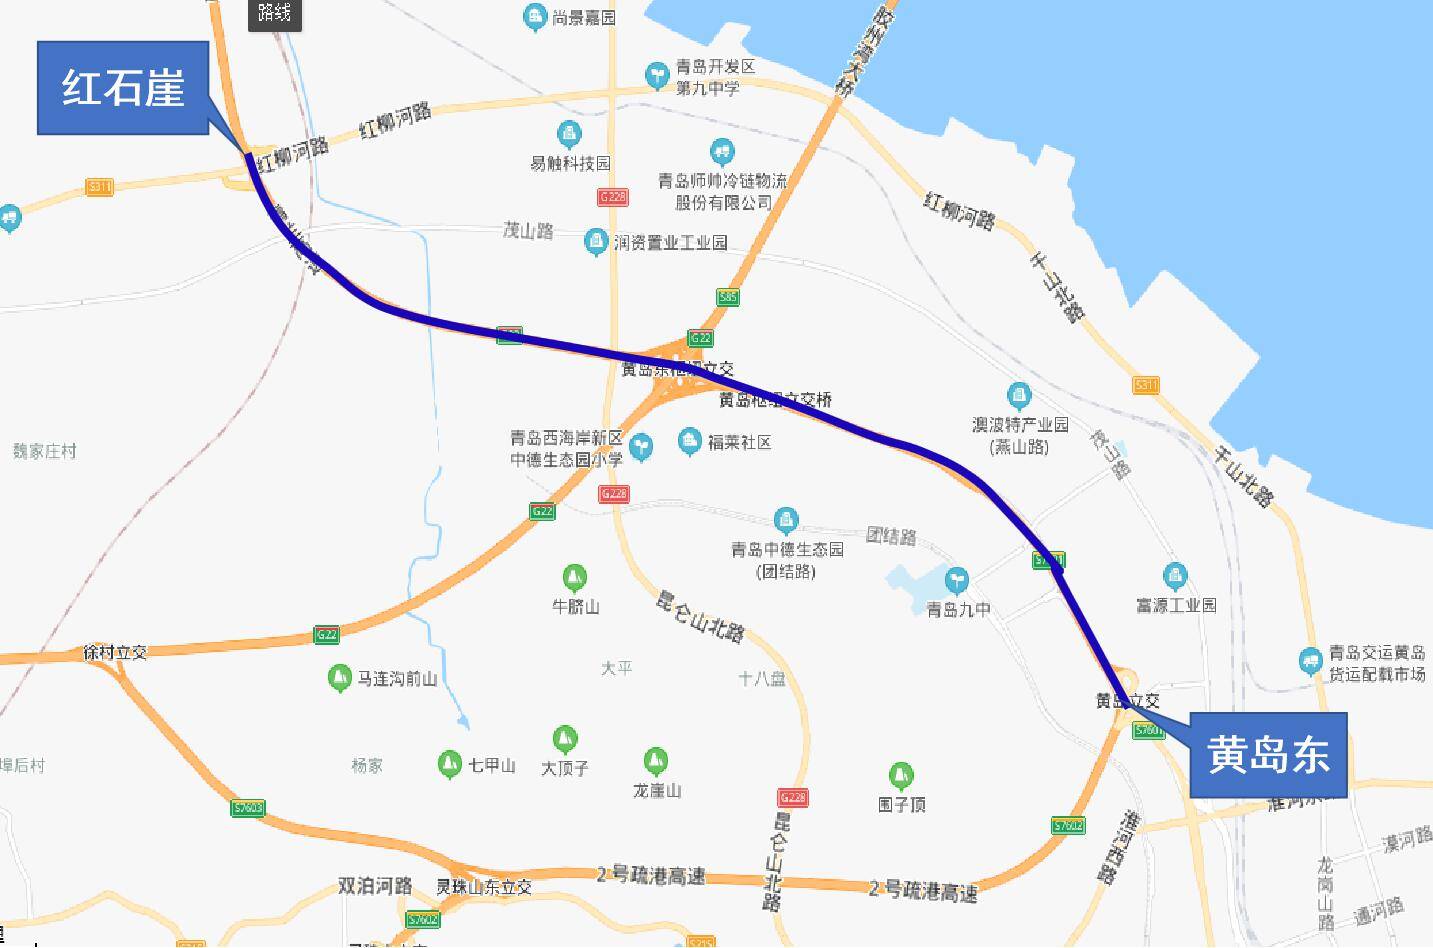 胶州湾高速免费通行段示意图。